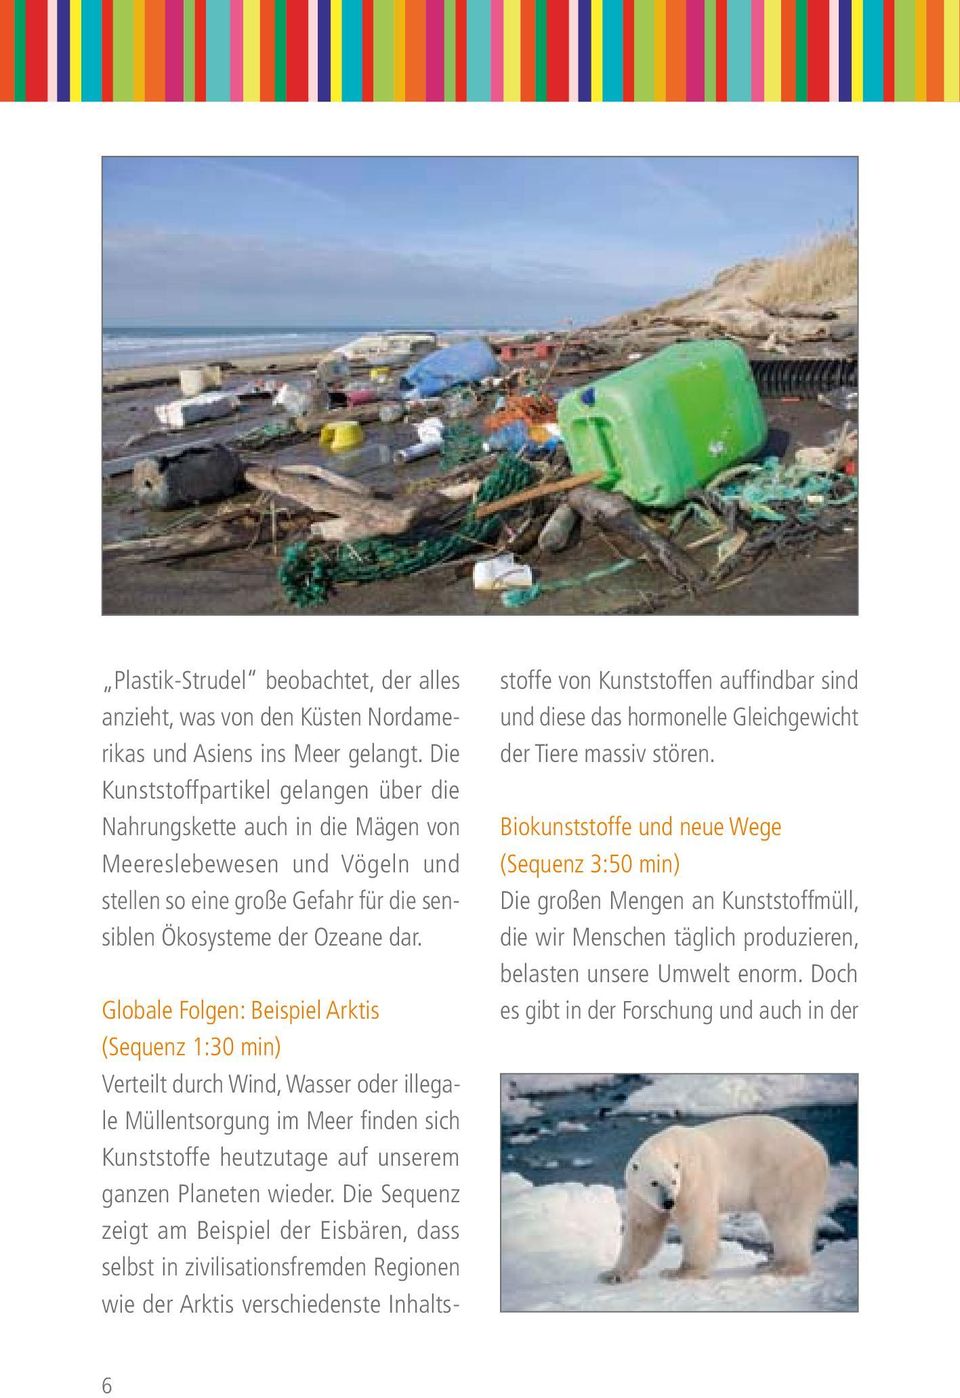 Globale Folgen: Beispiel Arktis (Sequenz 1:30 min) Verteilt durch Wind, Wasser oder illegale Müllentsorgung im Meer finden sich Kunststoffe heutzutage auf unserem ganzen Planeten wieder.